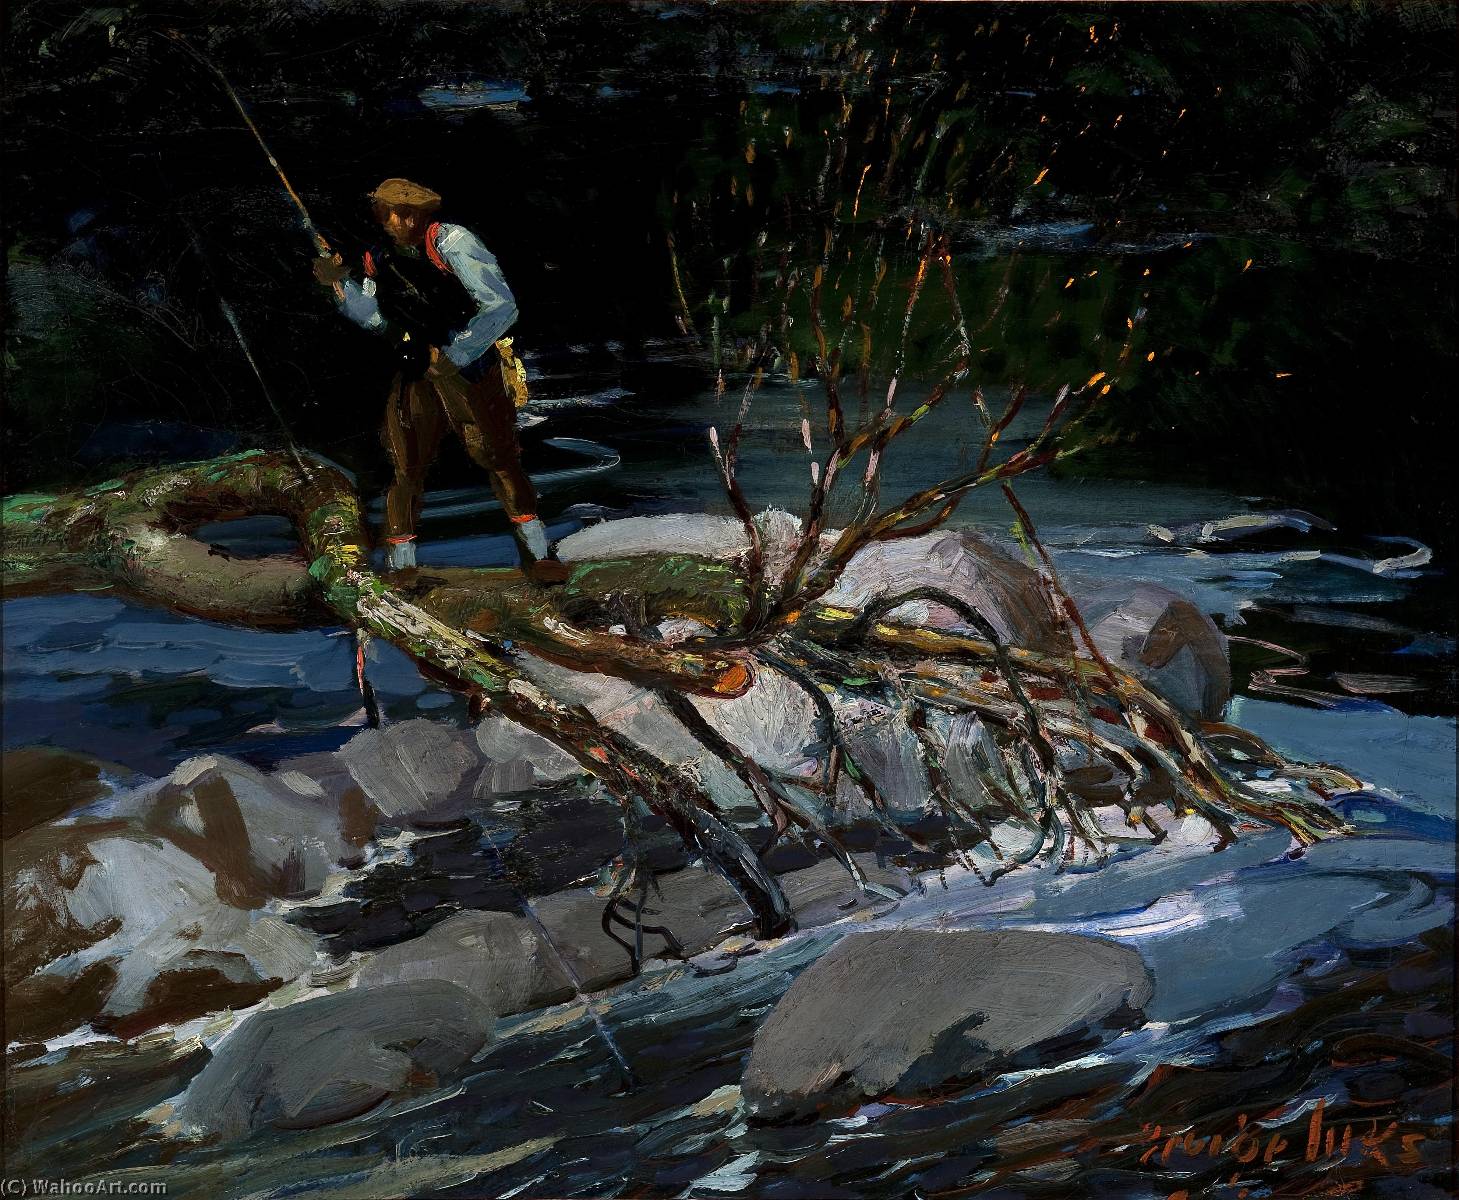 WikiOO.org - Enciklopedija likovnih umjetnosti - Slikarstvo, umjetnička djela George Benjamin Luks - Trout Fishing